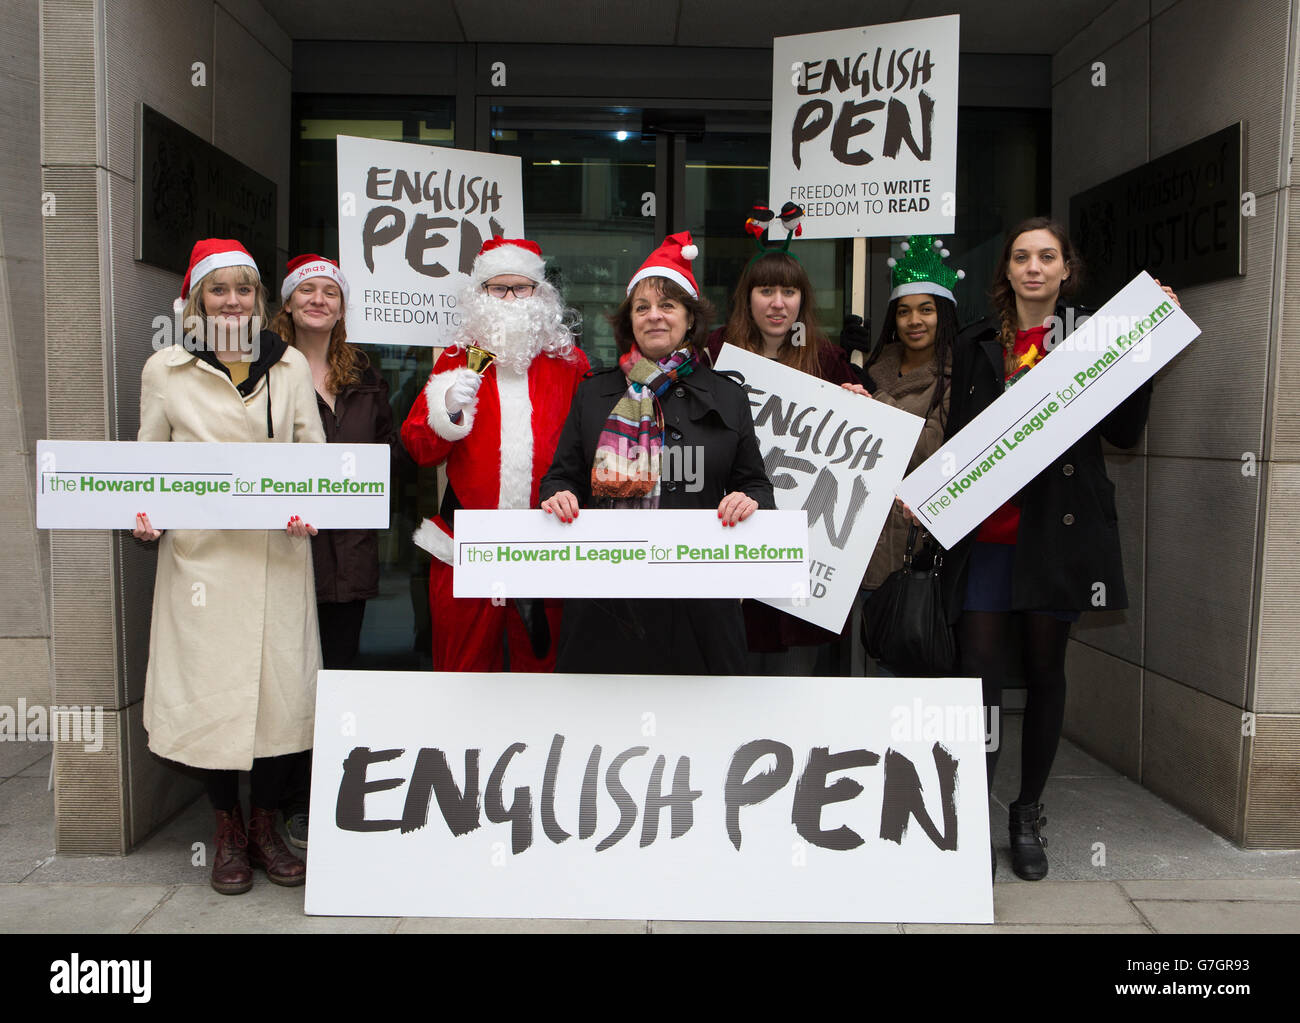 Gli attivisti hanno in scena una manifestazione fuori dal Ministero della Giustizia a Westminster, Londra, esortando i ministri a revocare le restrizioni sui prigionieri che ricevono libri in tempo per Natale. Foto Stock